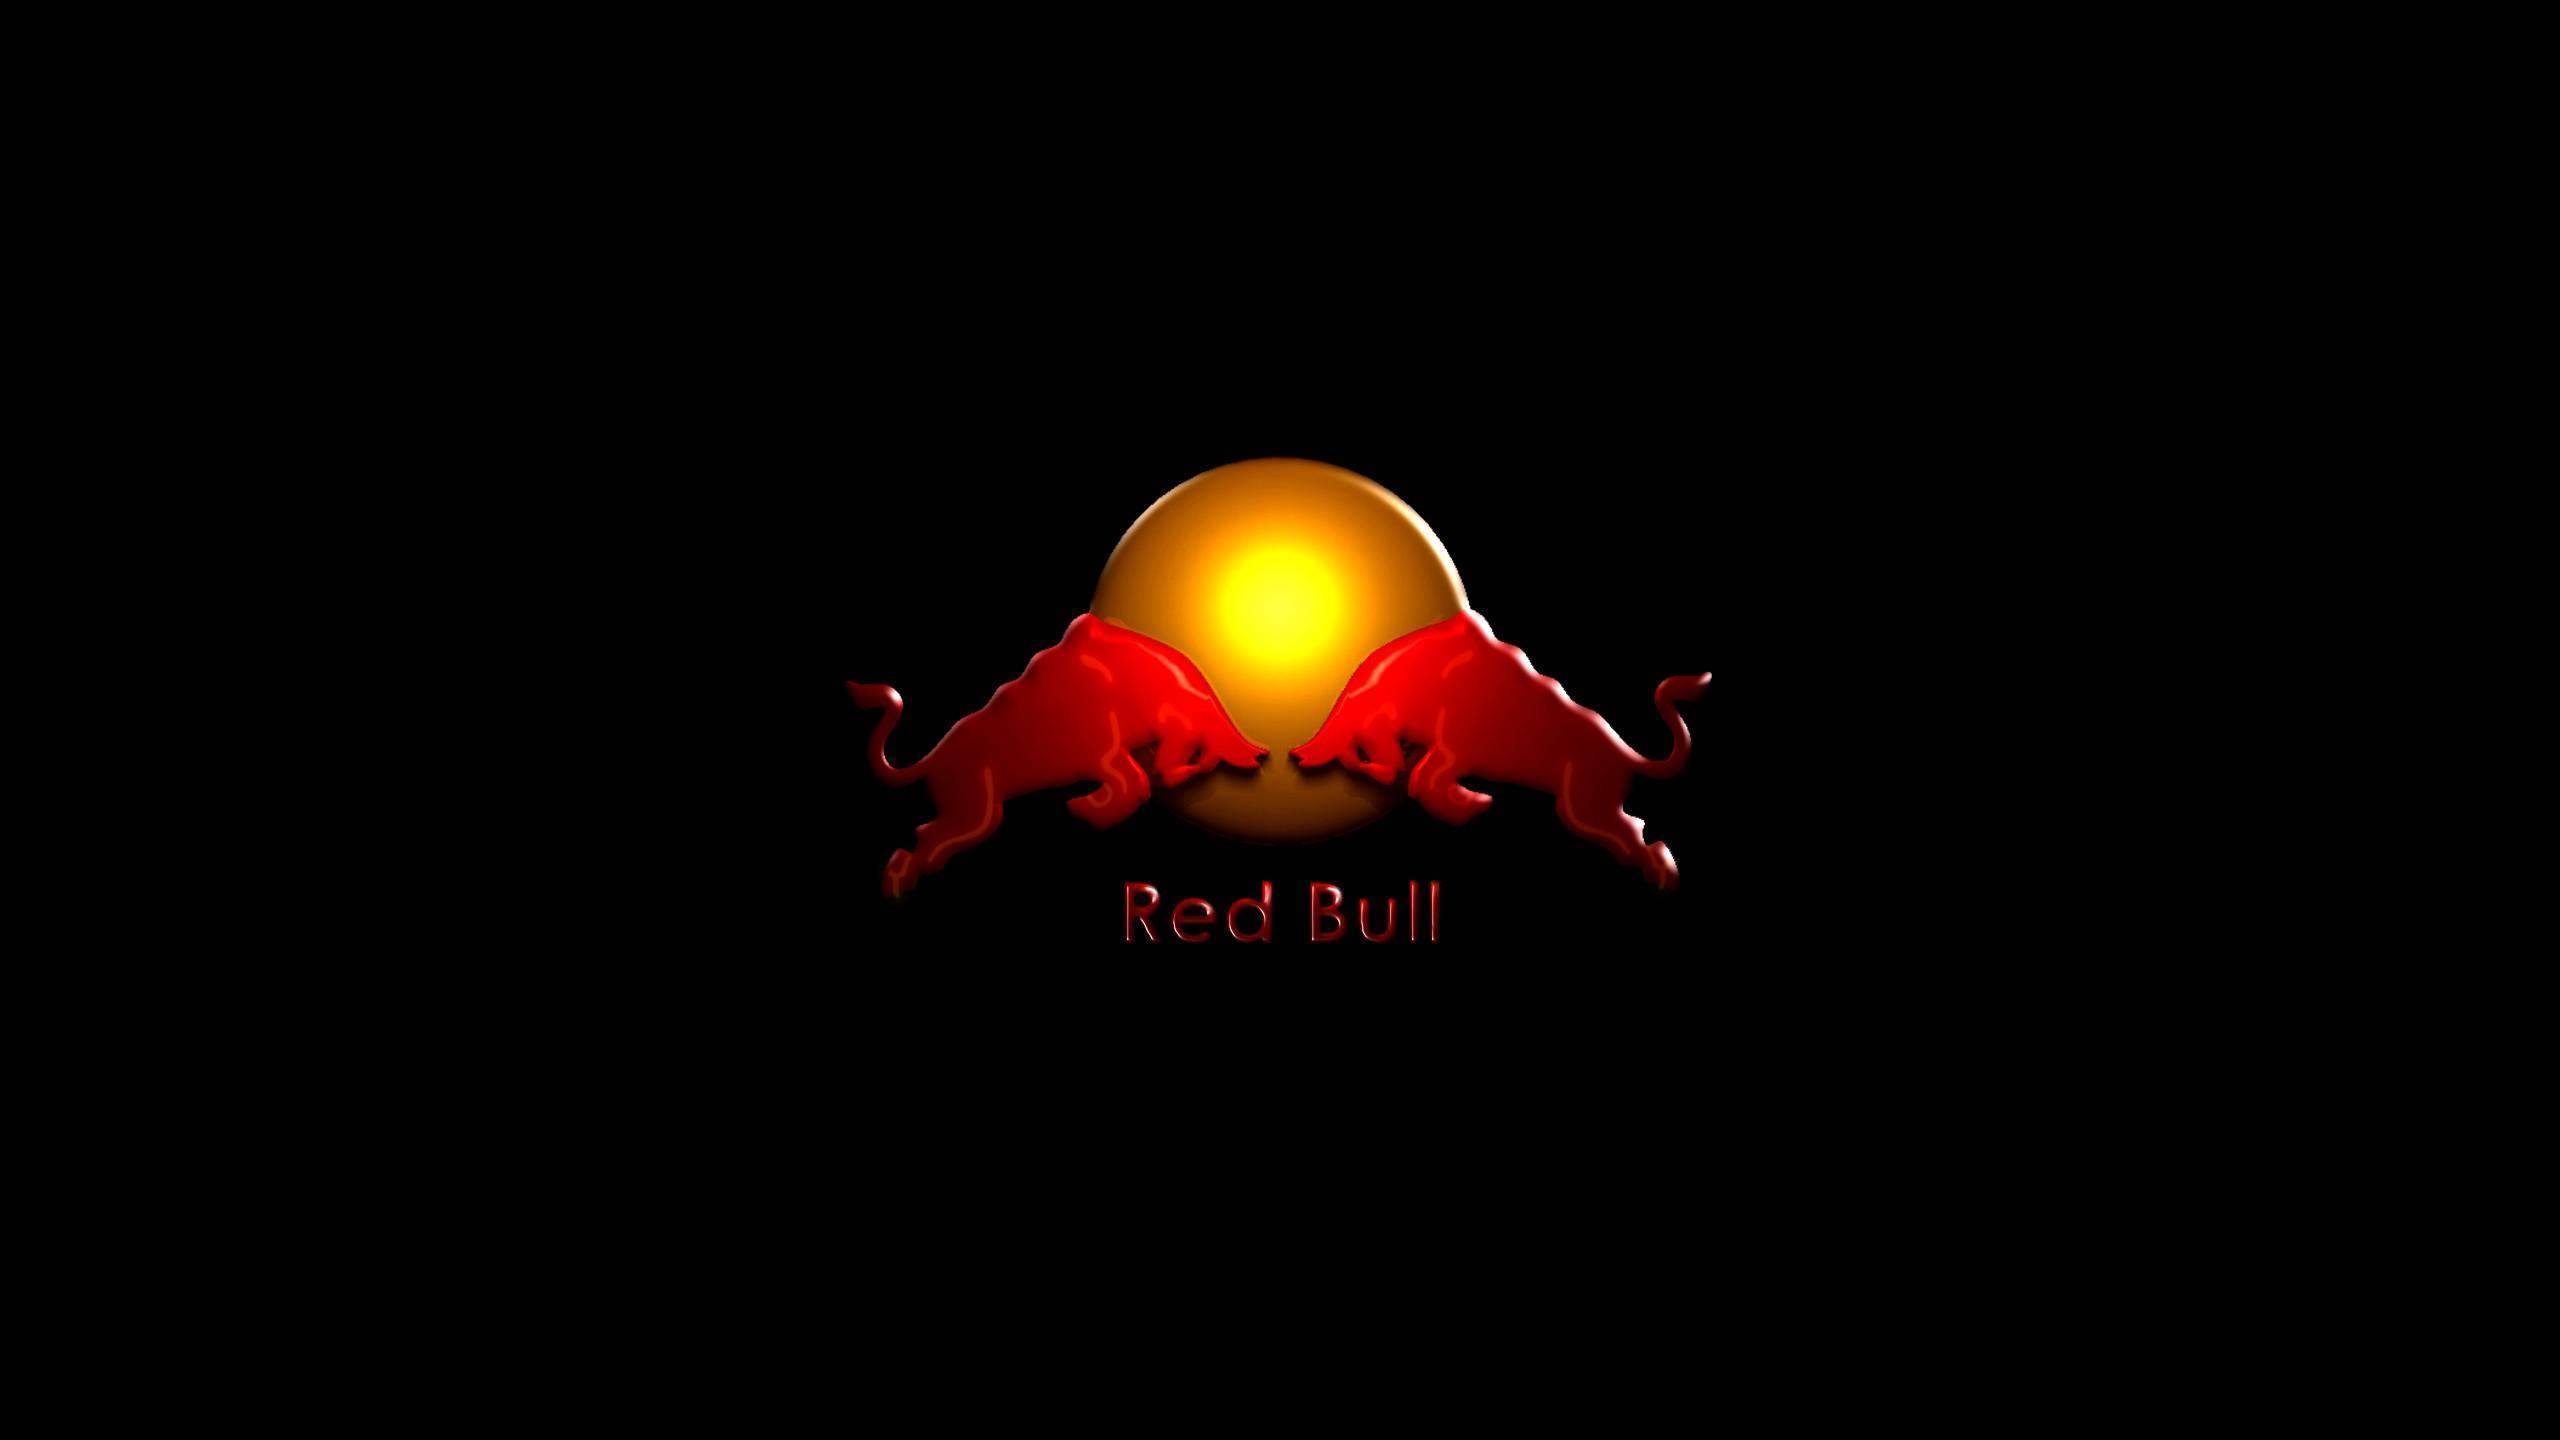 Red Bull for 2560x1440 HDTV resolution